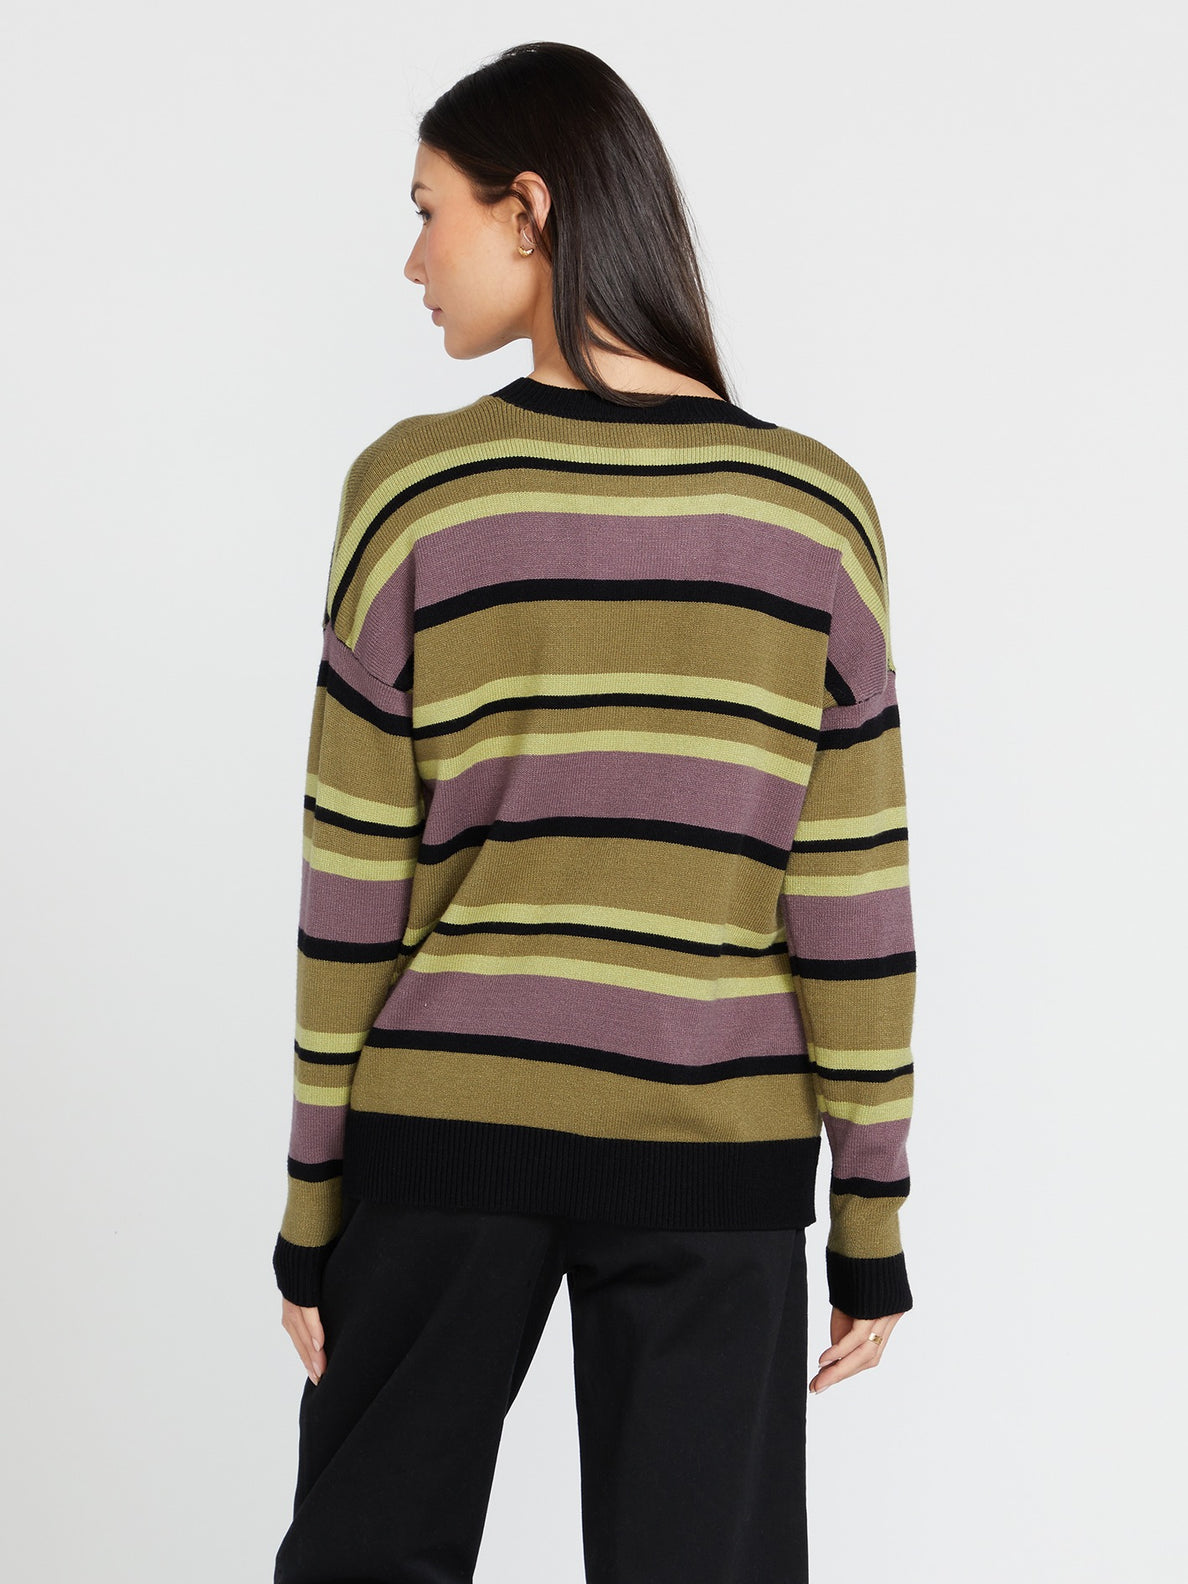 Dede Lovelace Sweater